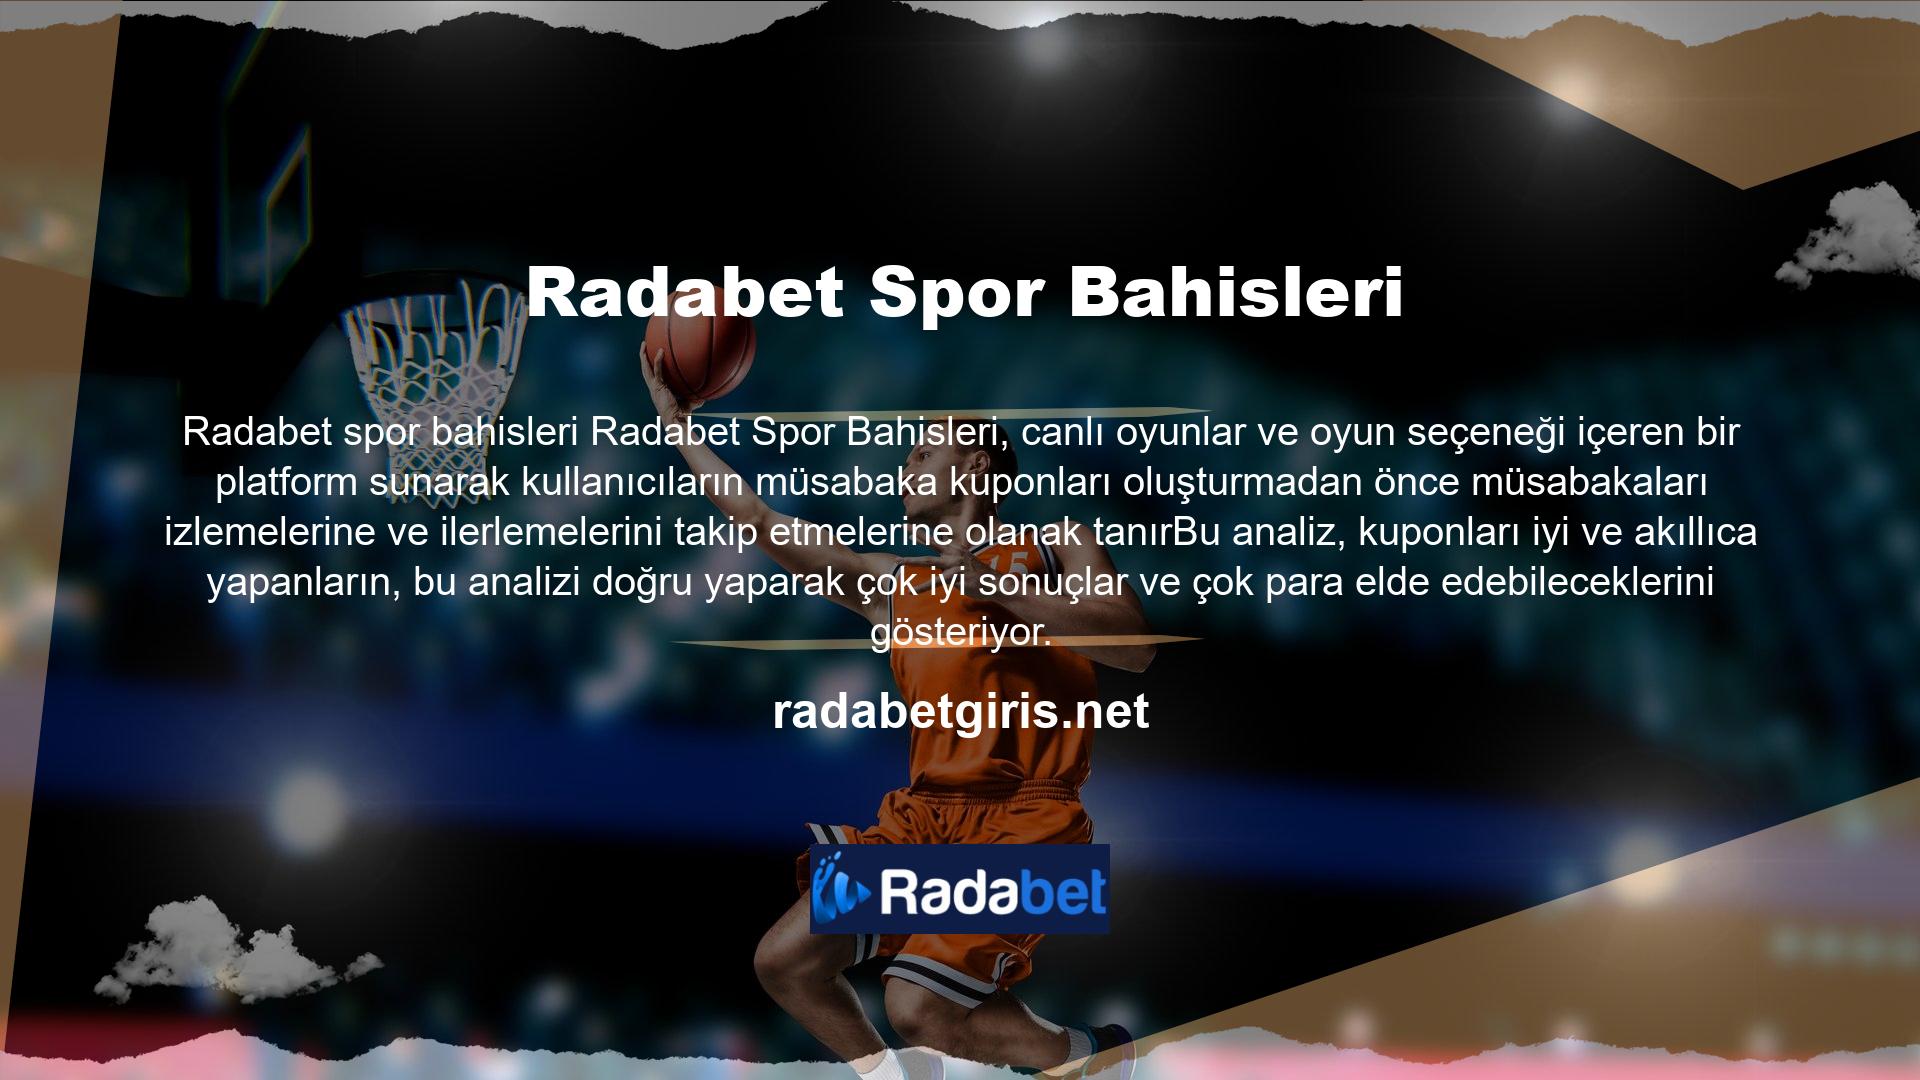 Radabet canlı maç özelliği, sitenin tüm kanallarından uydu üzerinden canlı yayınları görüntüler